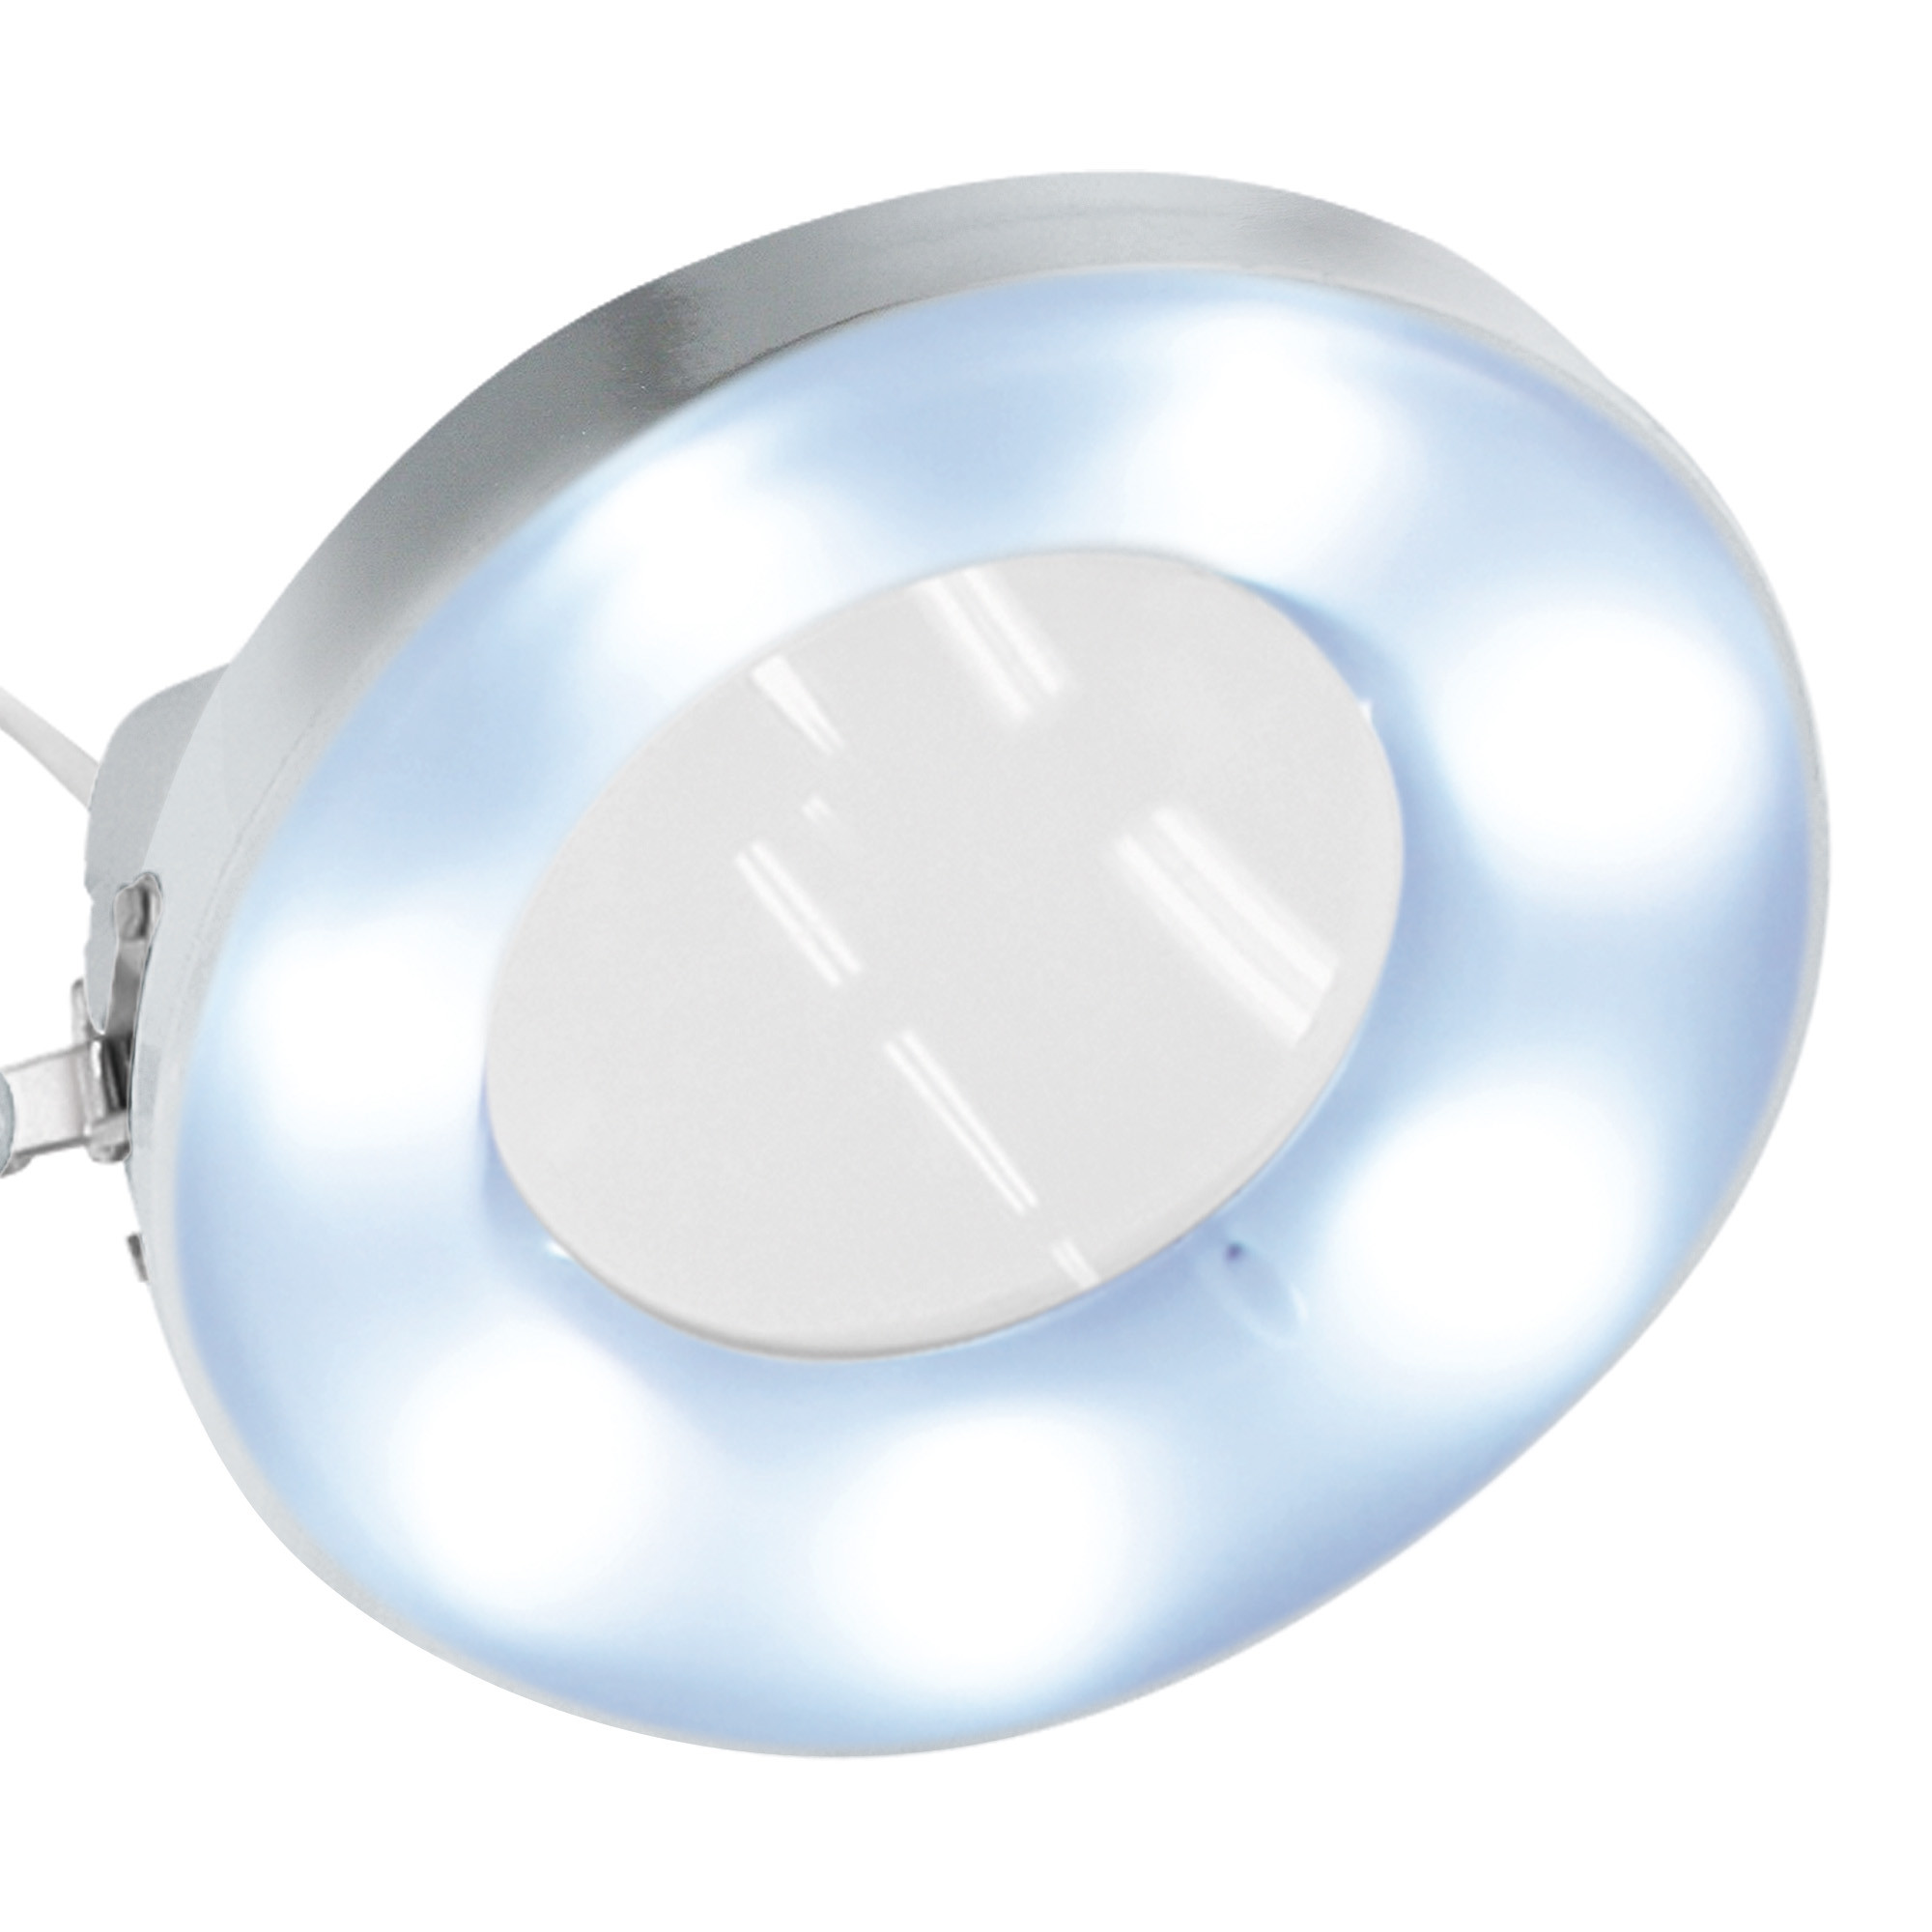 Afma Evo Lampe mit LED-Licht und verchromter 5-Diopter-Lupe